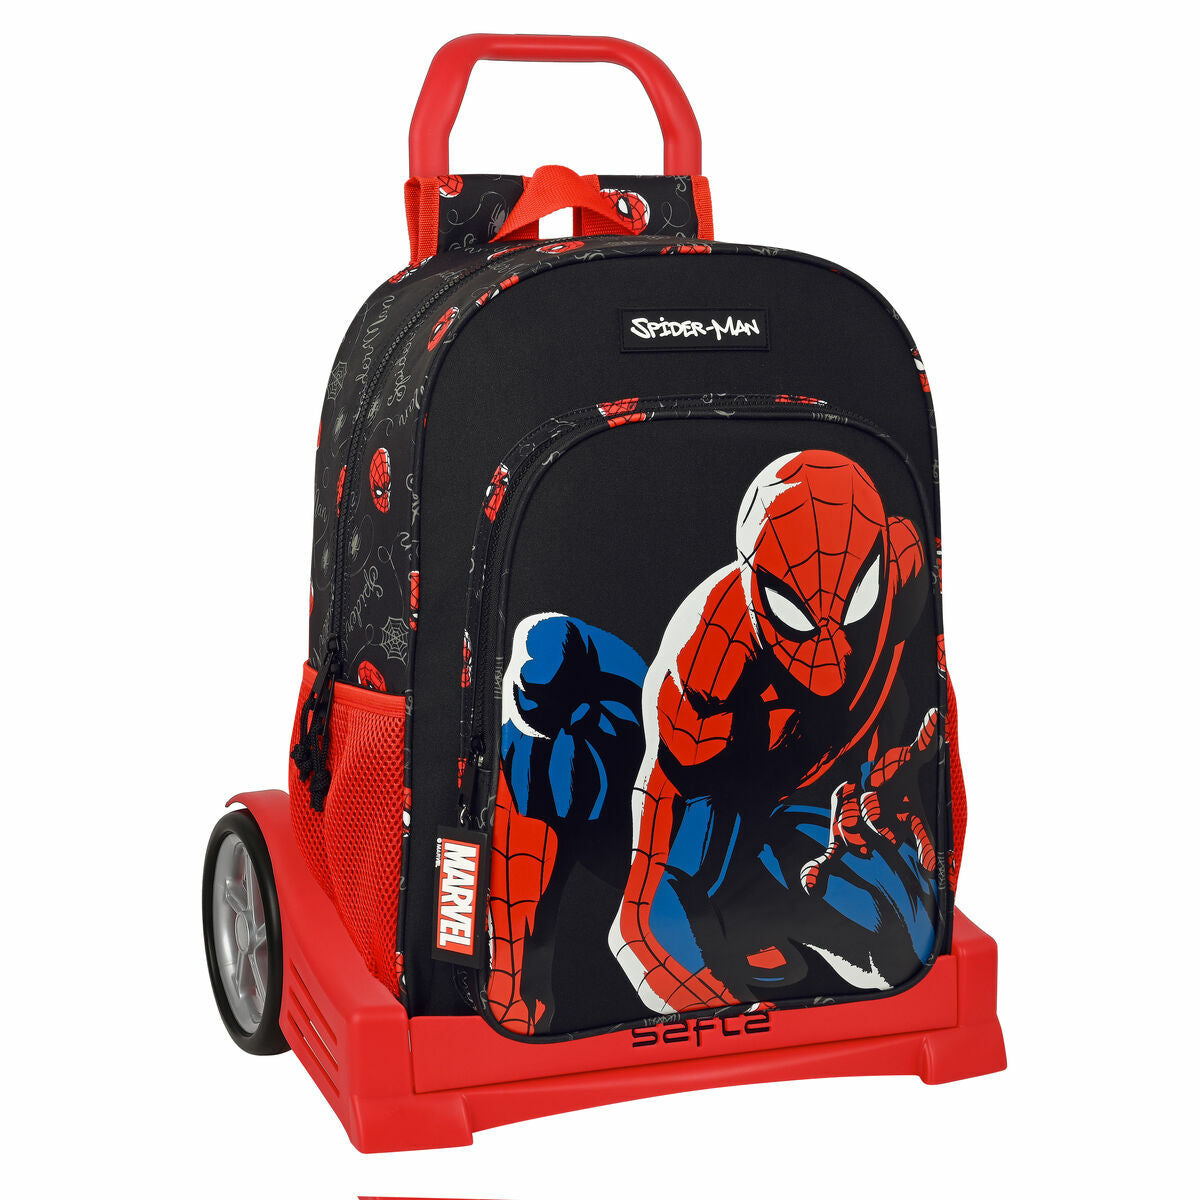 Kaufe Schulrucksack mit Rädern Safta Schwarz Spiderman Rot 33 x 14 x 42 cm bei AWK Flagship um € 72.00